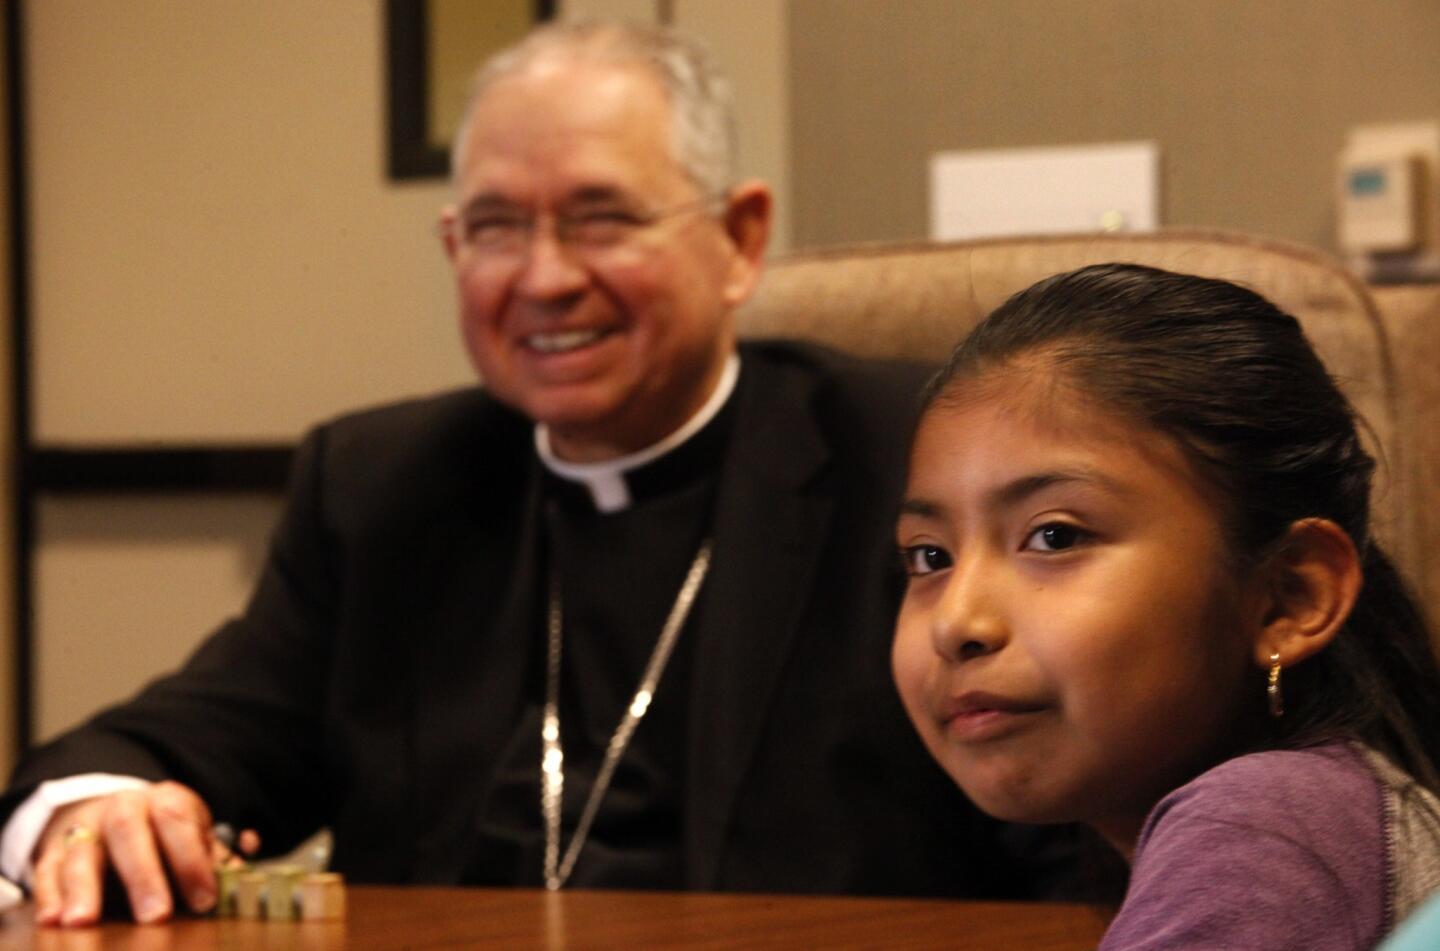 Los Angeles Archbishop Jose Gomez meets with Jersey Vargas, 10.